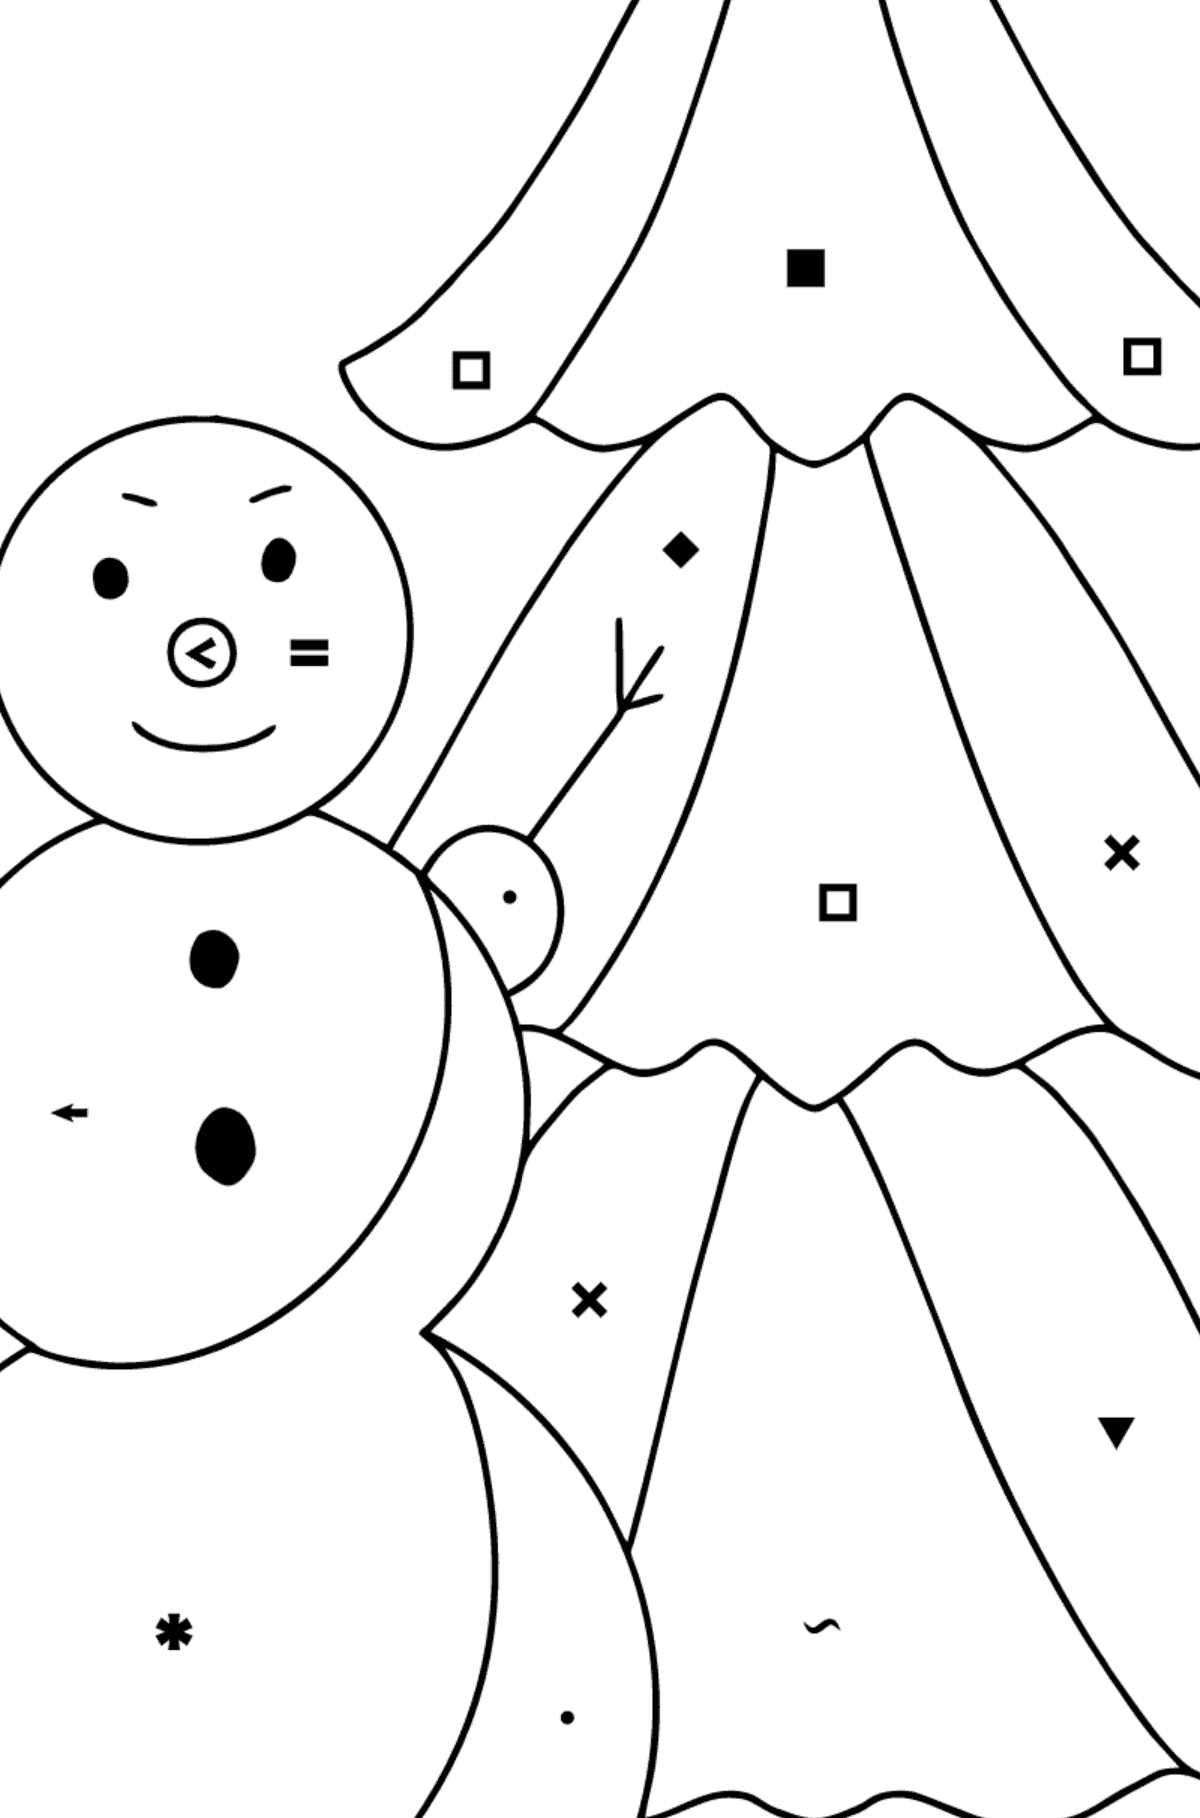 Desenho para colorir do boneco de neve para crianças - Colorir por Símbolos para Crianças